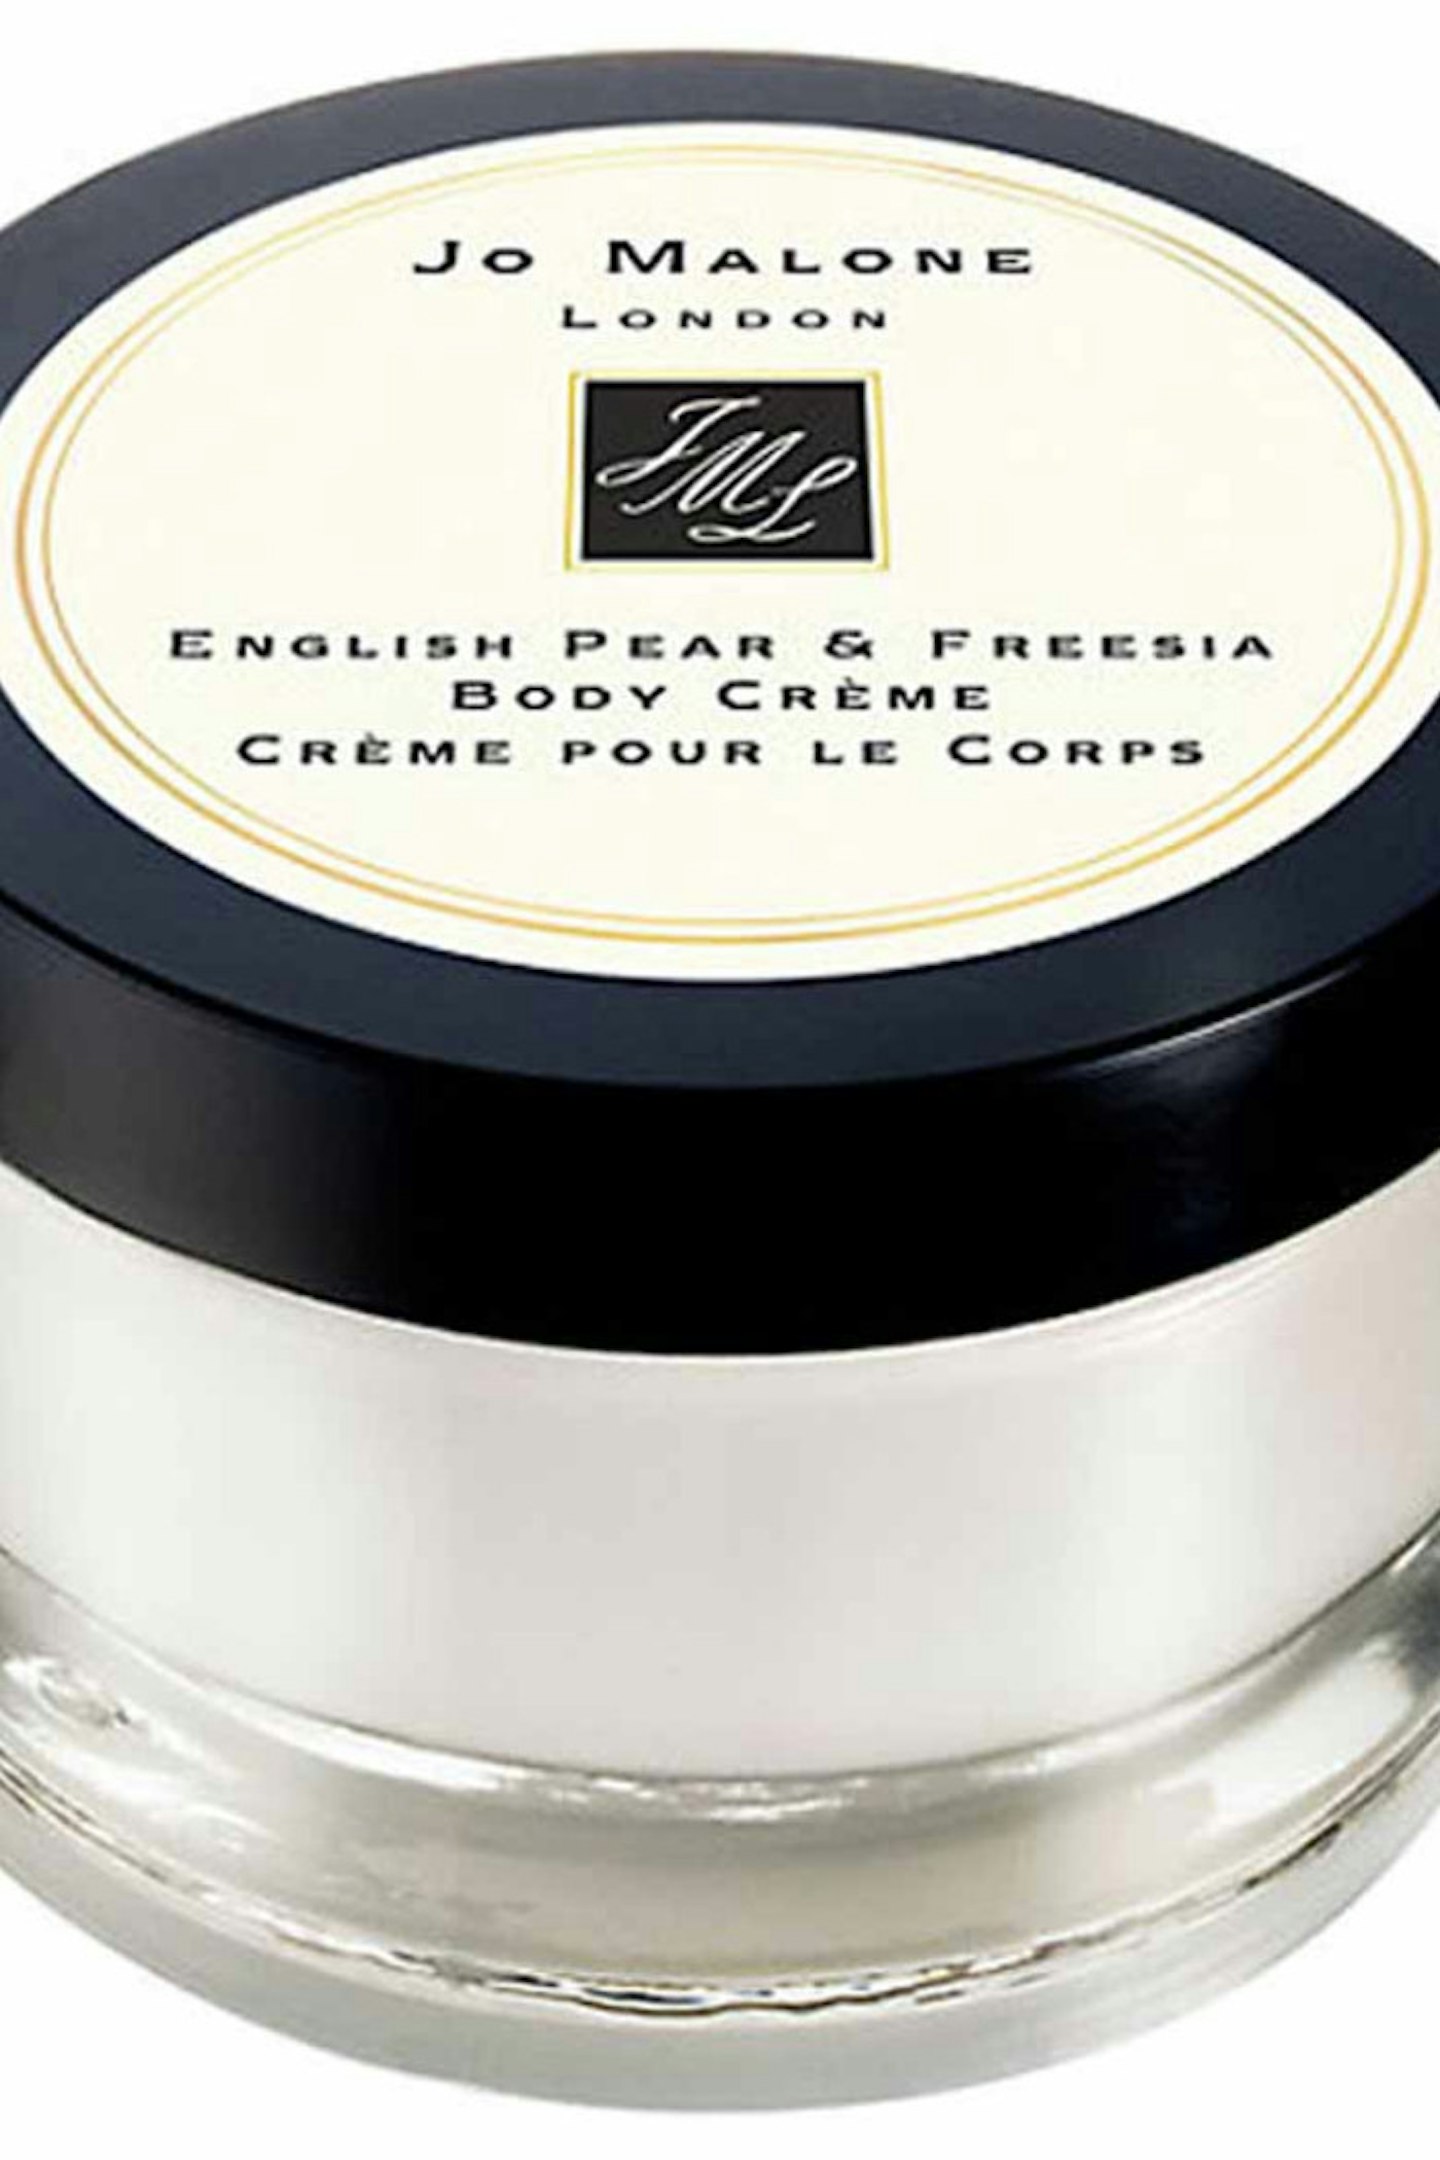 Jo Malone English Pear and Freesia Body Crème, £50.00